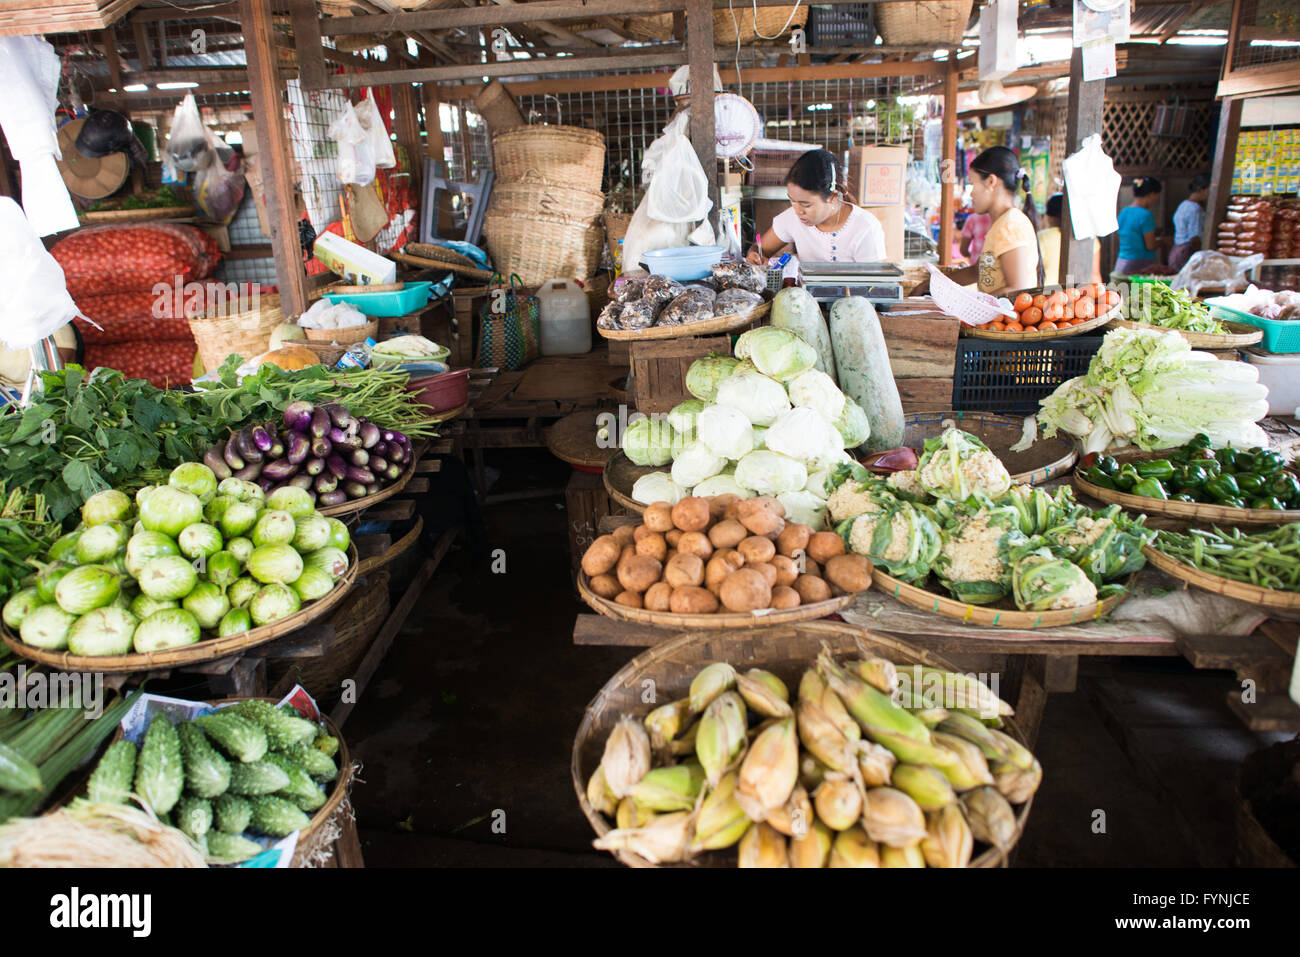 NYAUNG-U, Myanmar - Frisches Obst und Gemüse zum Verkauf an Nyaung-U Markt, in der Nähe von Bagan, Myanmar (Birma). Der Markt ist auch als Mani Sithu Markt bekannt. Stockfoto